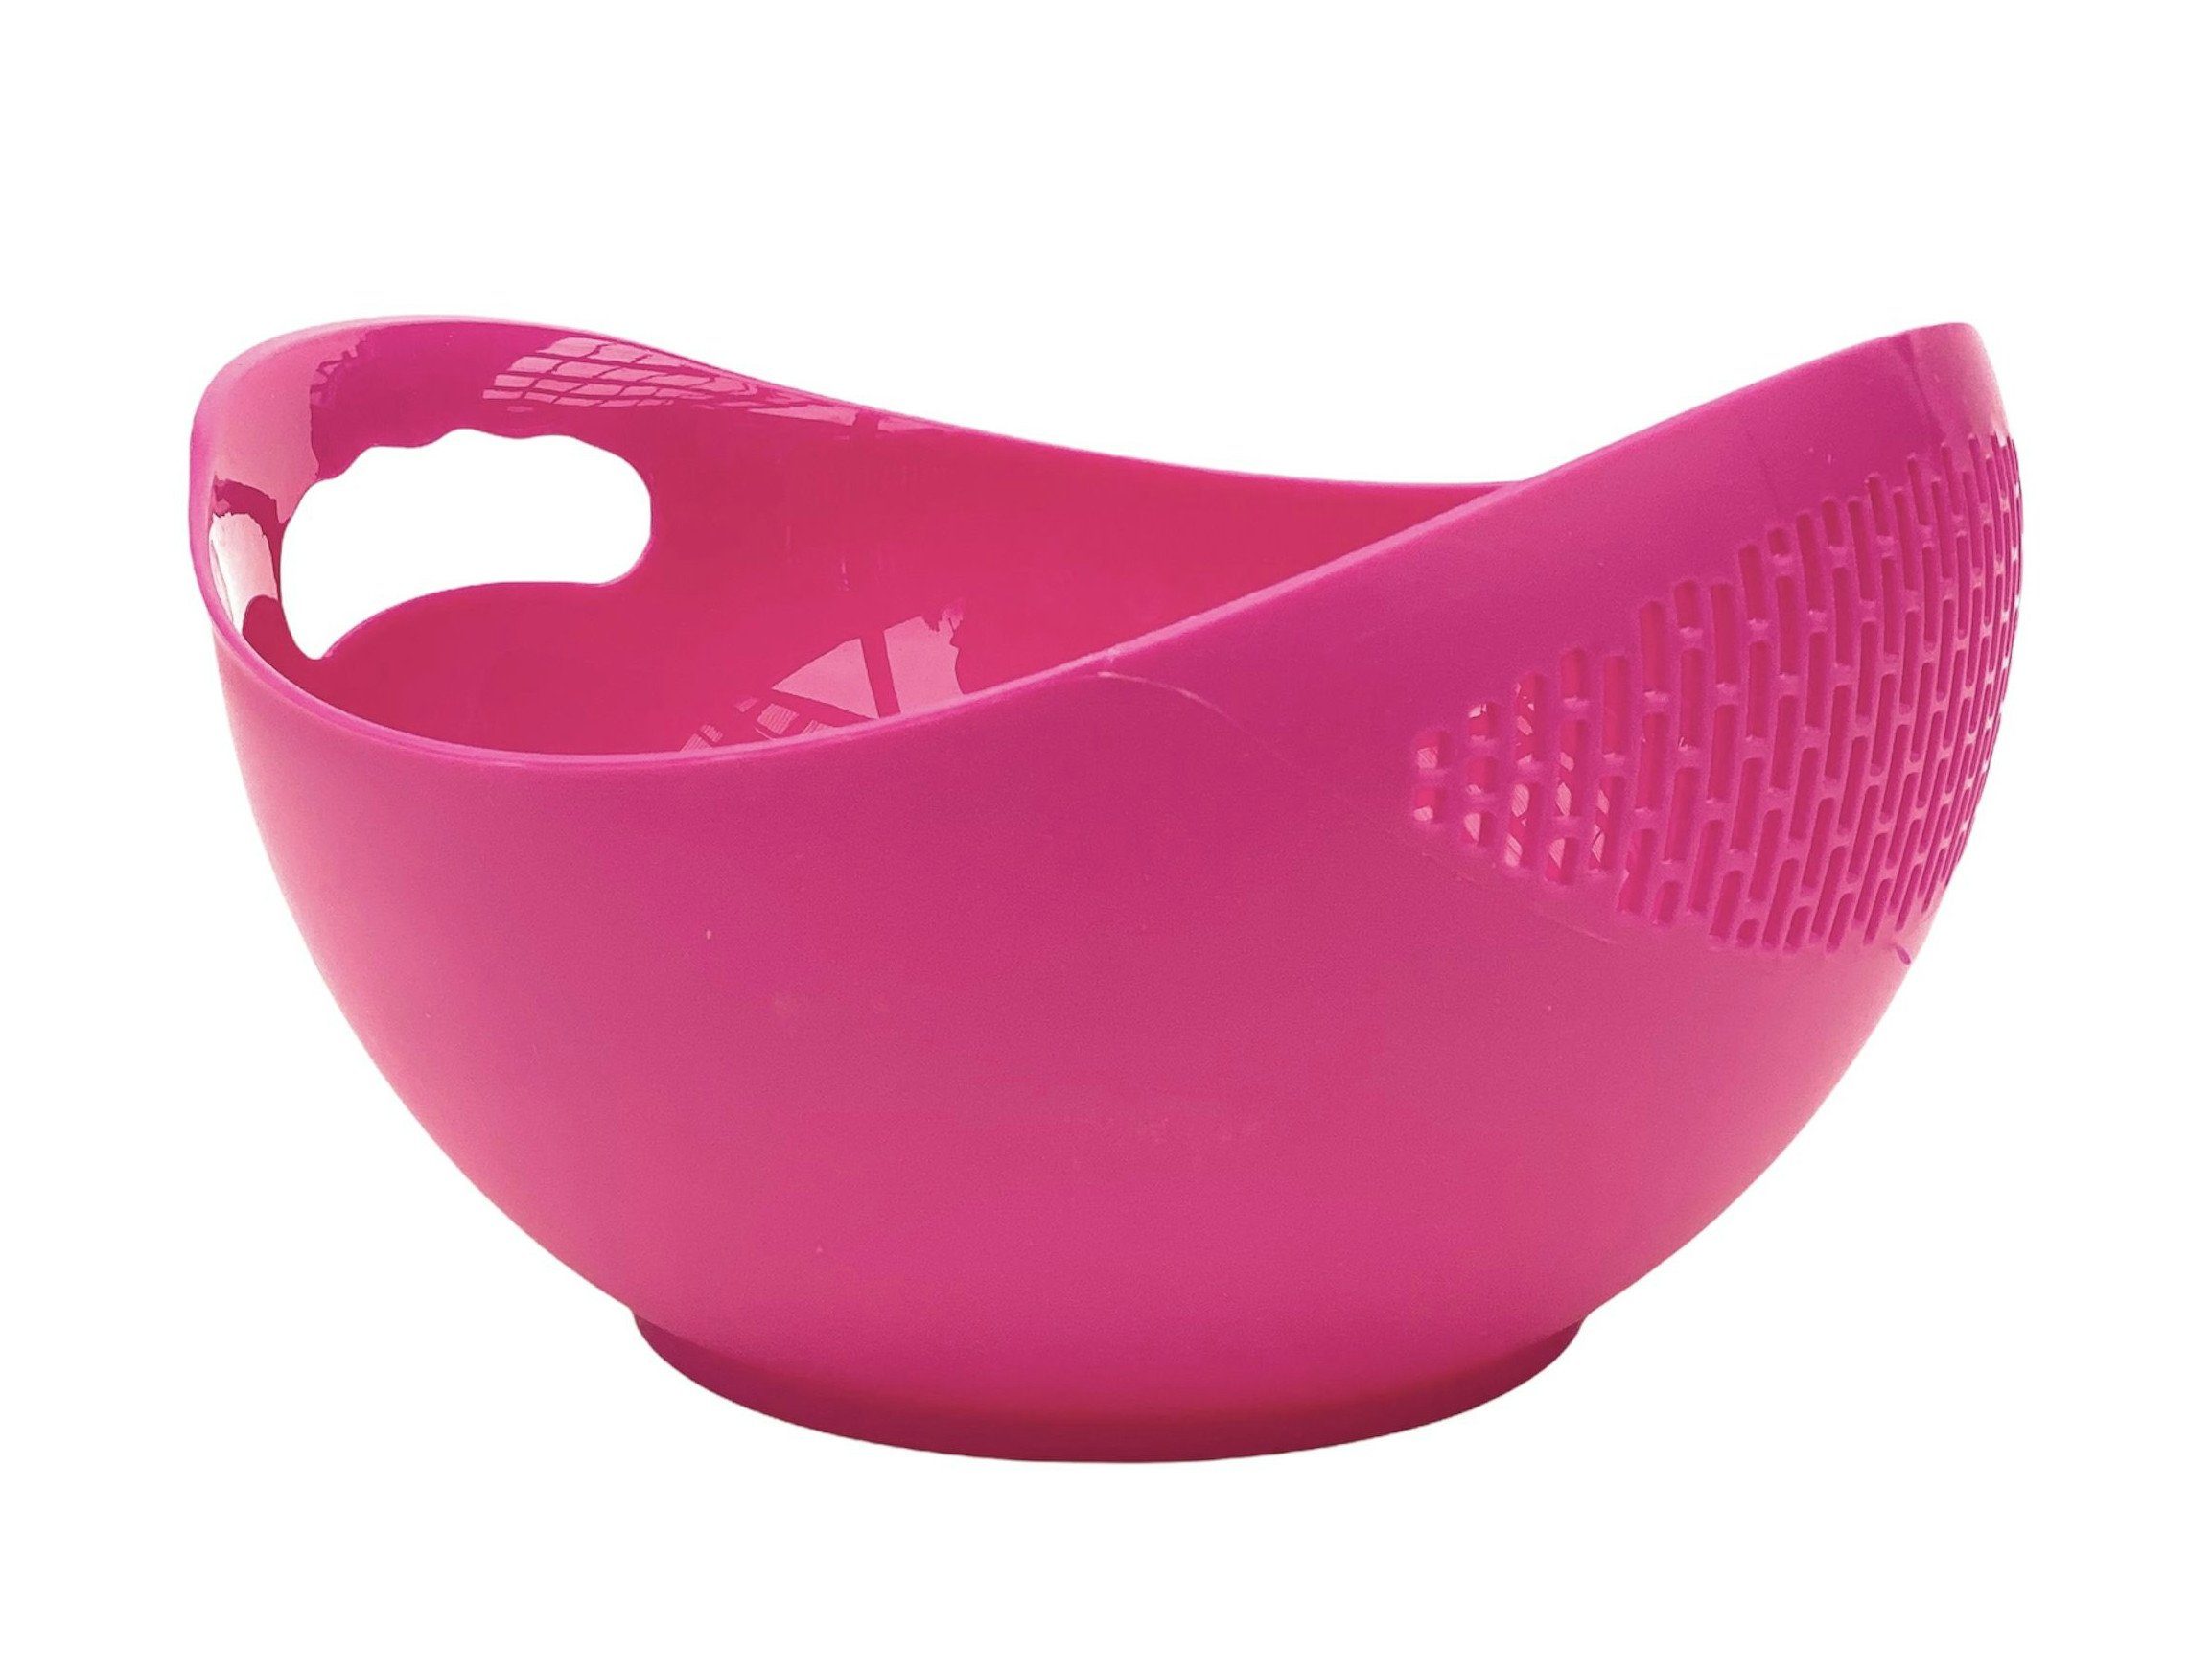 Abtropfsieb Sieb Seiher Salatschüssel 521 Pink Spülmaschinenfest DanDiBo Waschschüssel Schüssel Küchensieb Kunststoff mit Nudelsieb